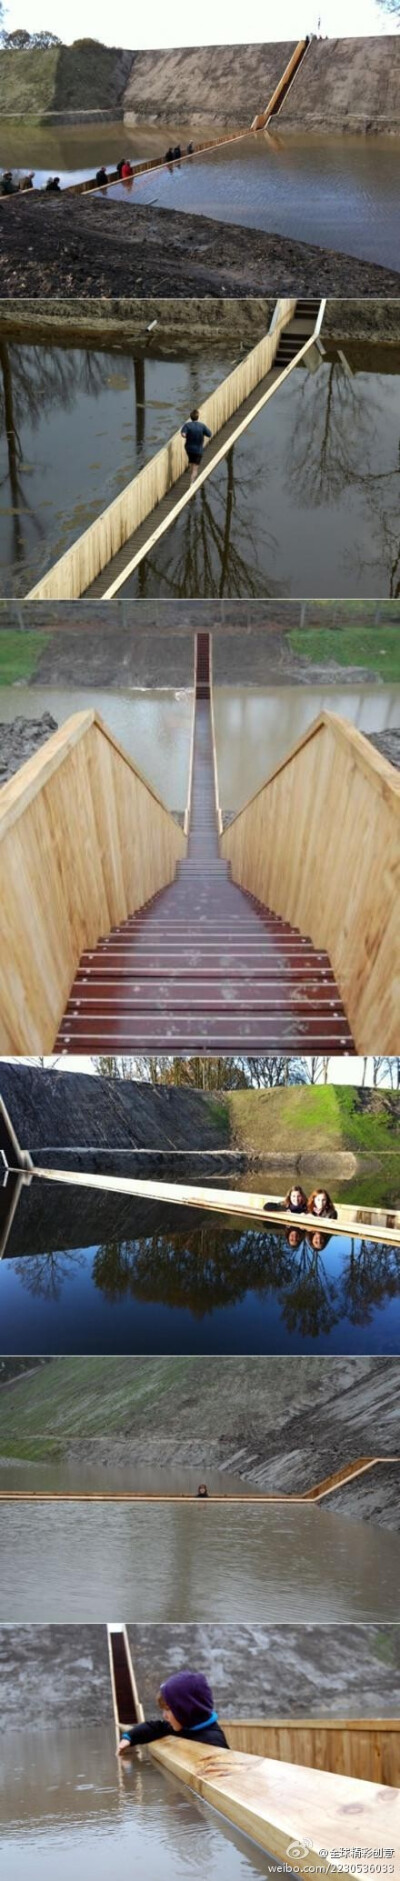 荷兰RO & AD 事务所设计的“跑渠桥”Sunken Pedestrian Bridge，获得了荷兰建筑师联盟“2011年年度建筑奖”。“如果修一座桥越过防御水系，显然不太合适，尤其是这座桥正好是从过去敌人入侵的方向引导游客去城堡的。…